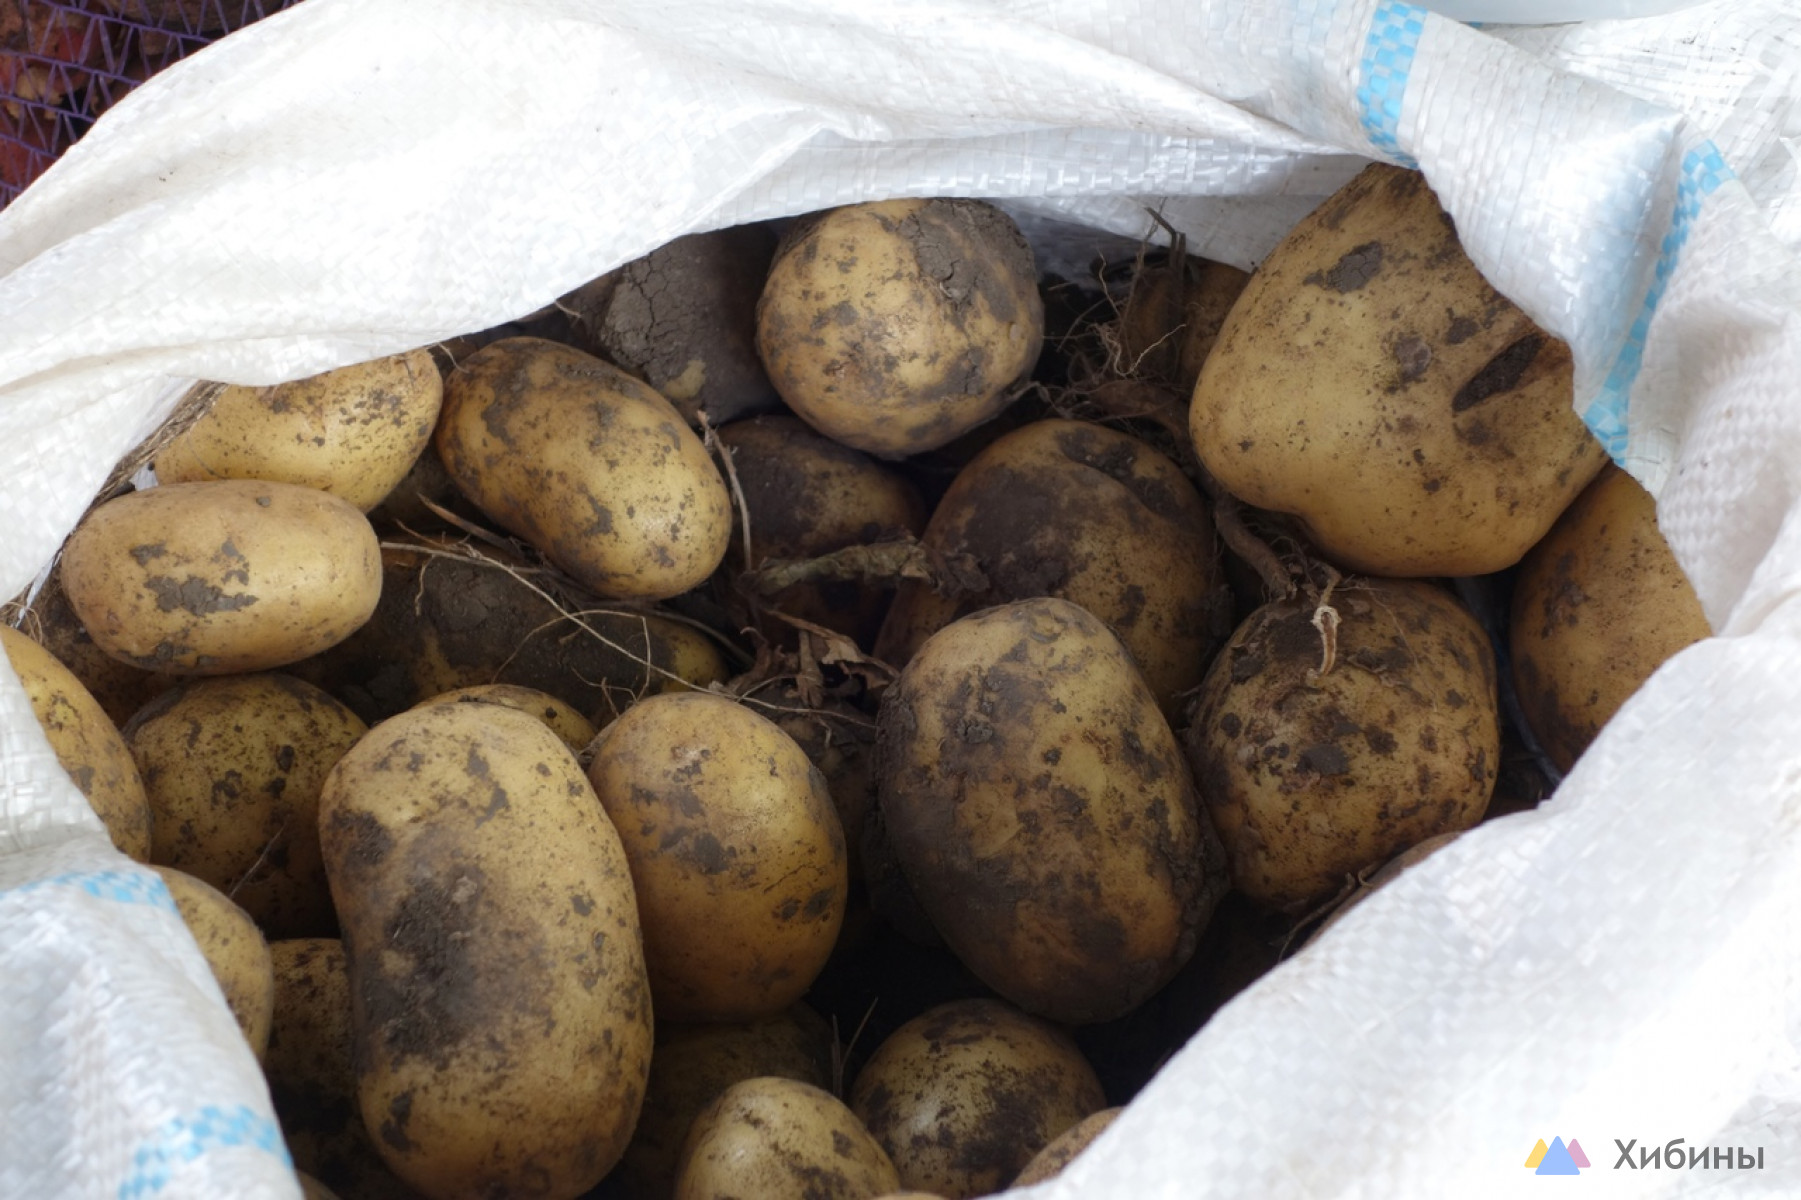 В Заполярье средняя цена картофеля упала до 35 рублей